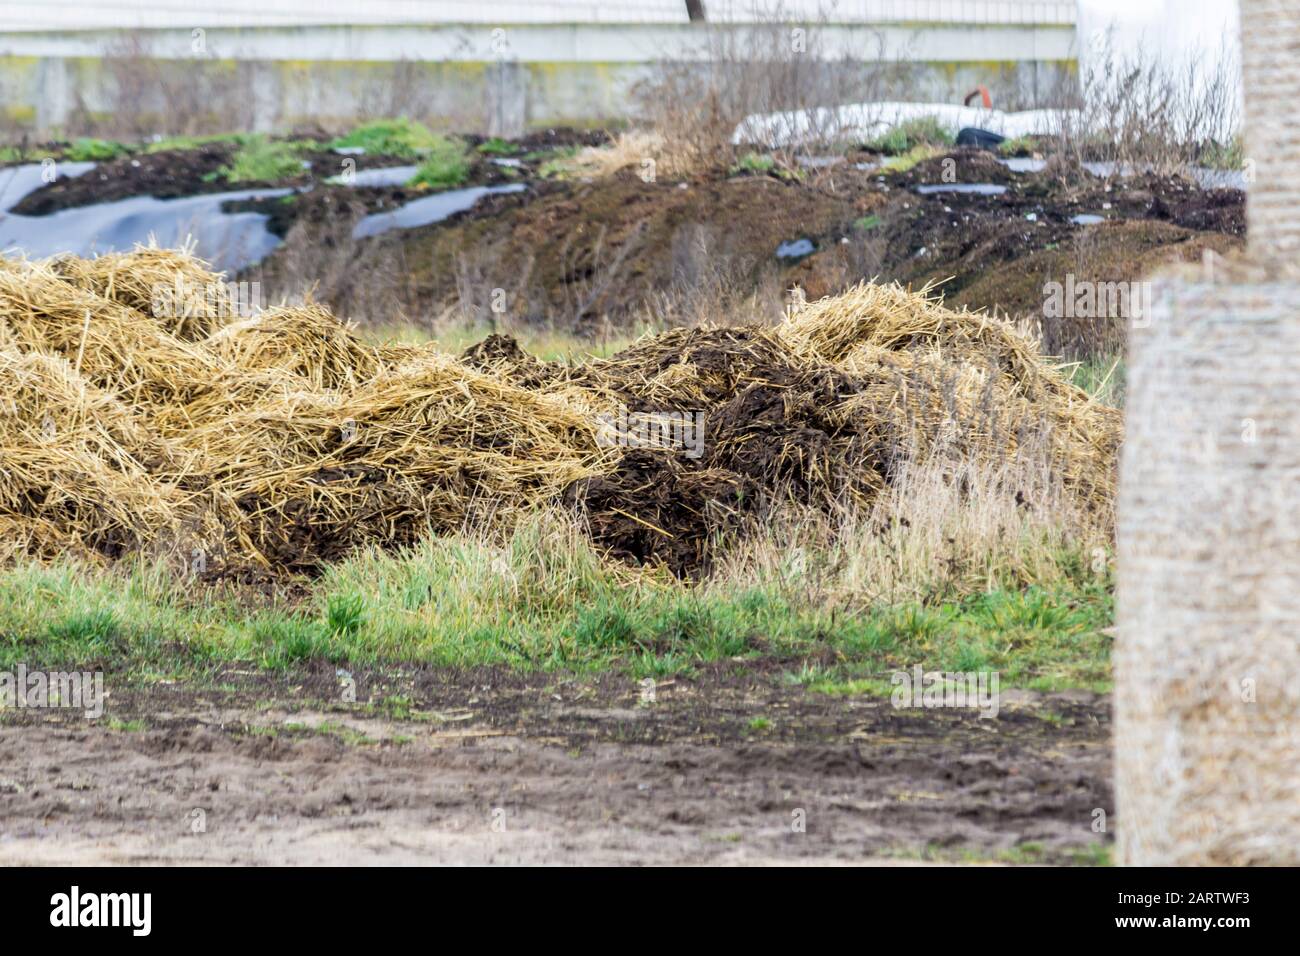 Le fumier mélangé à de la paille est préparé pour fertiliser les champs. Ferme laitière. Podlasie, Pologne. Banque D'Images